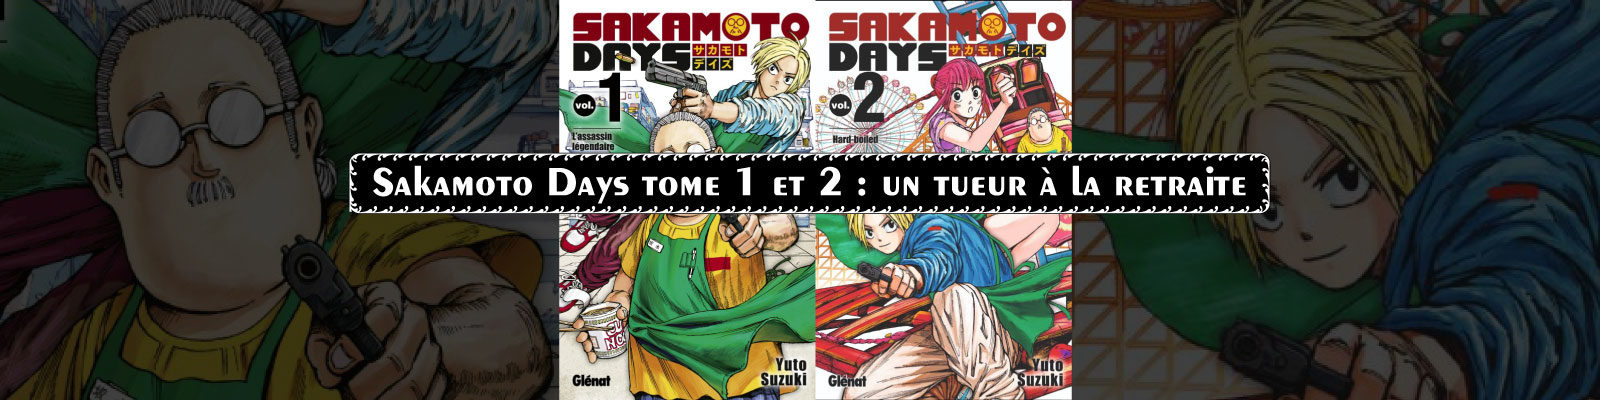 Sakamoto Days-Vol.-1-1-2